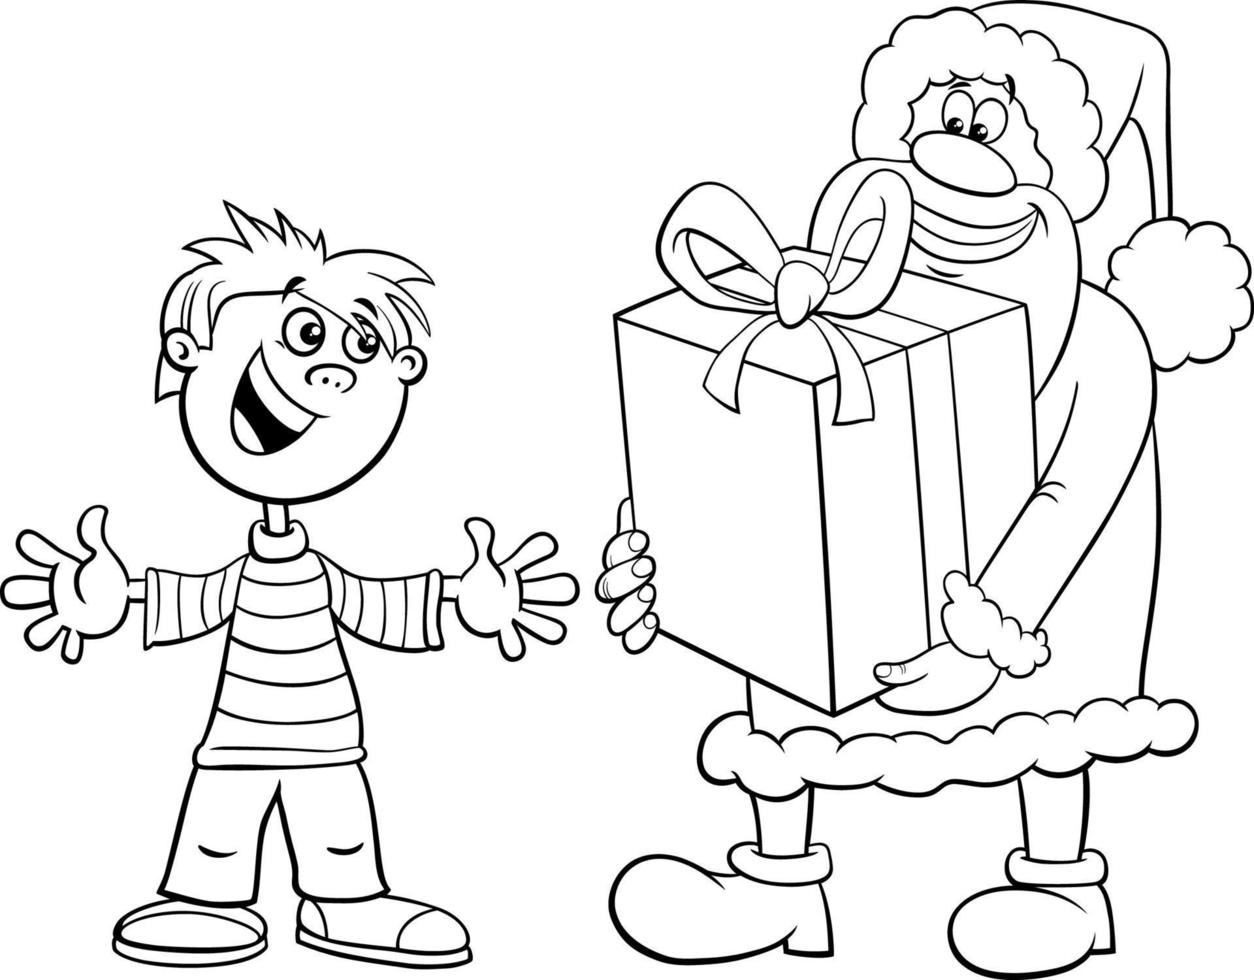 cartoon Santa Claus giving big present to a boy coloring page vector